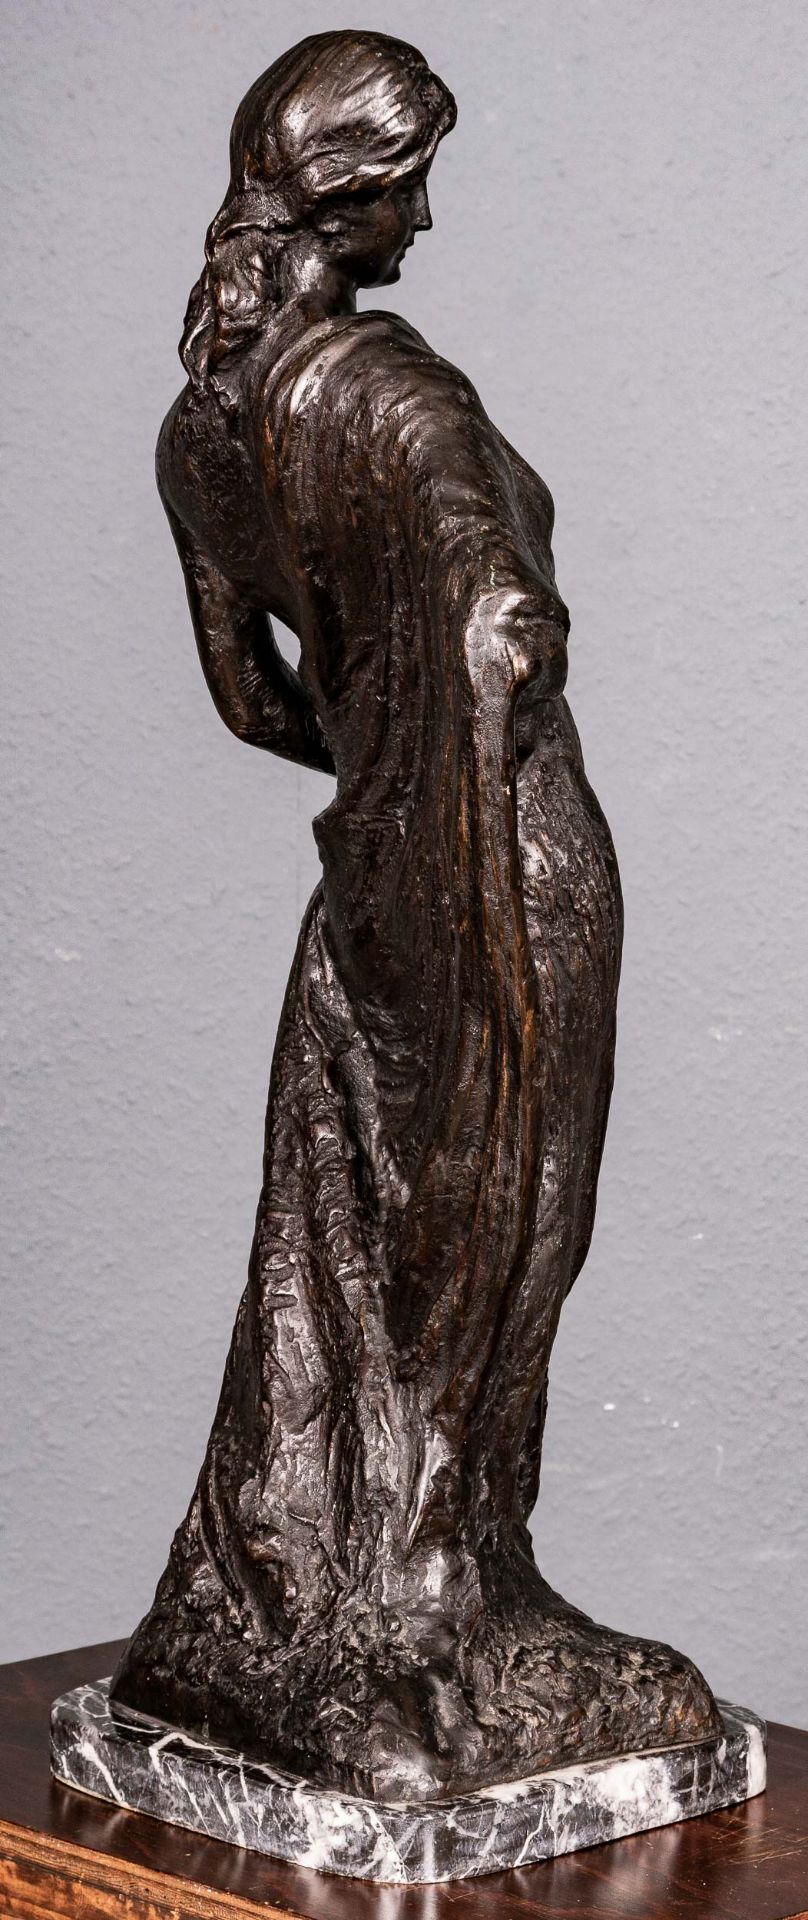 "Stehende junge Dame", schwarzbraun patinierter Bronzeguss, auf grauweiß geadertem, schwarzem Marmo - Bild 4 aus 17